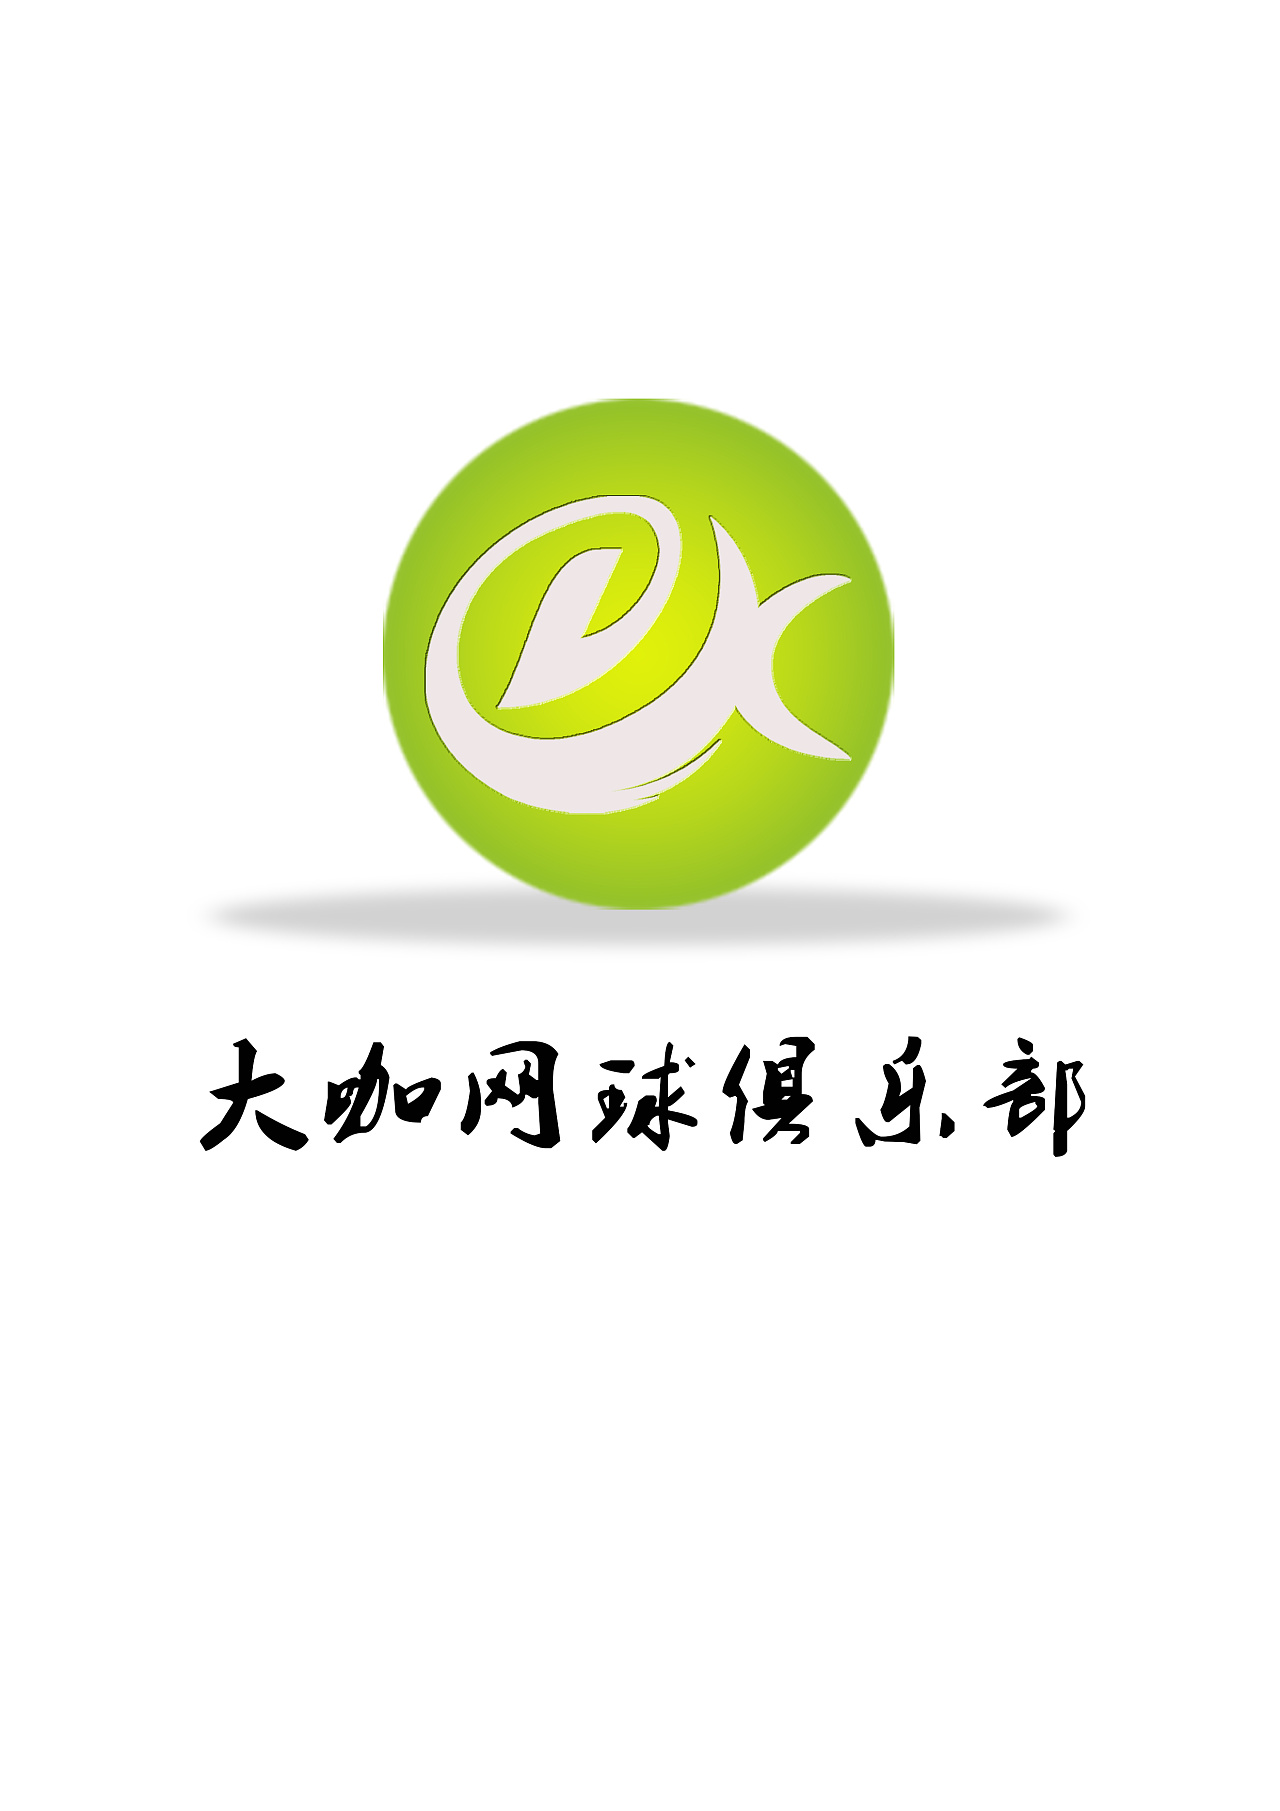 网球logo设计理念图片